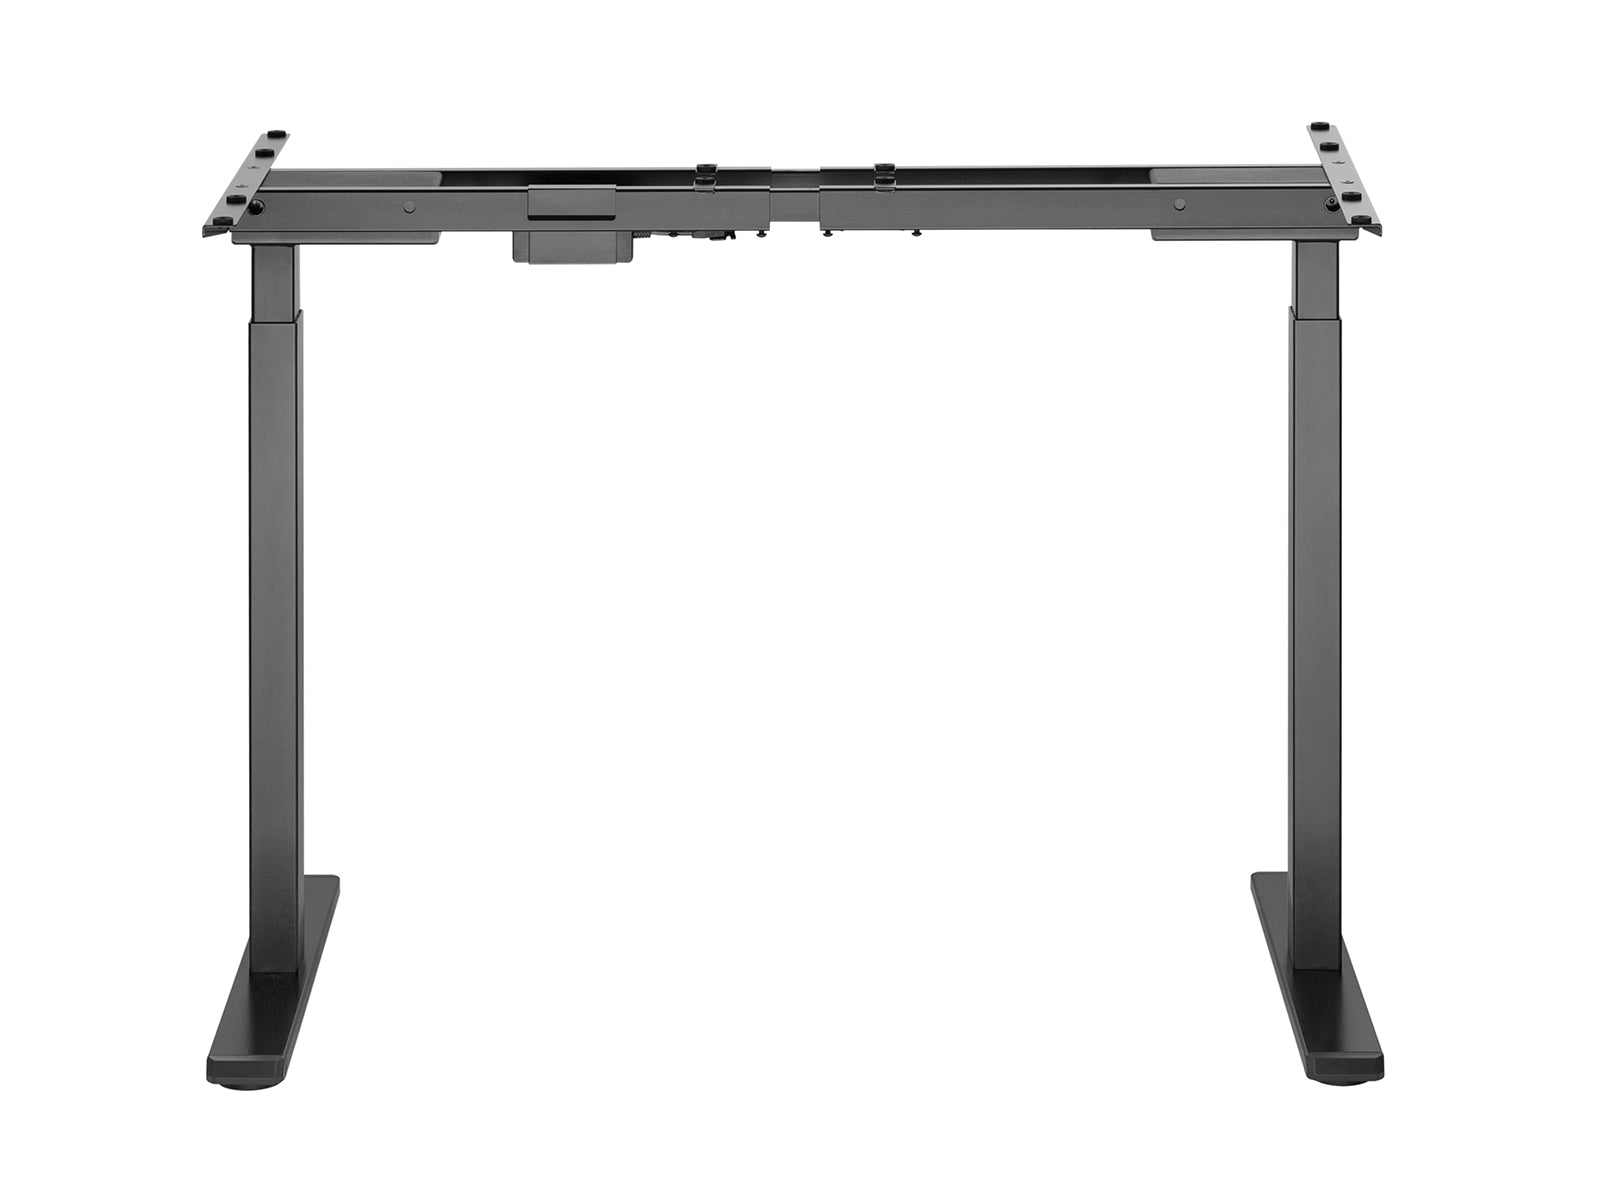 DS Height Adjustable Desk Frame Dual Motors